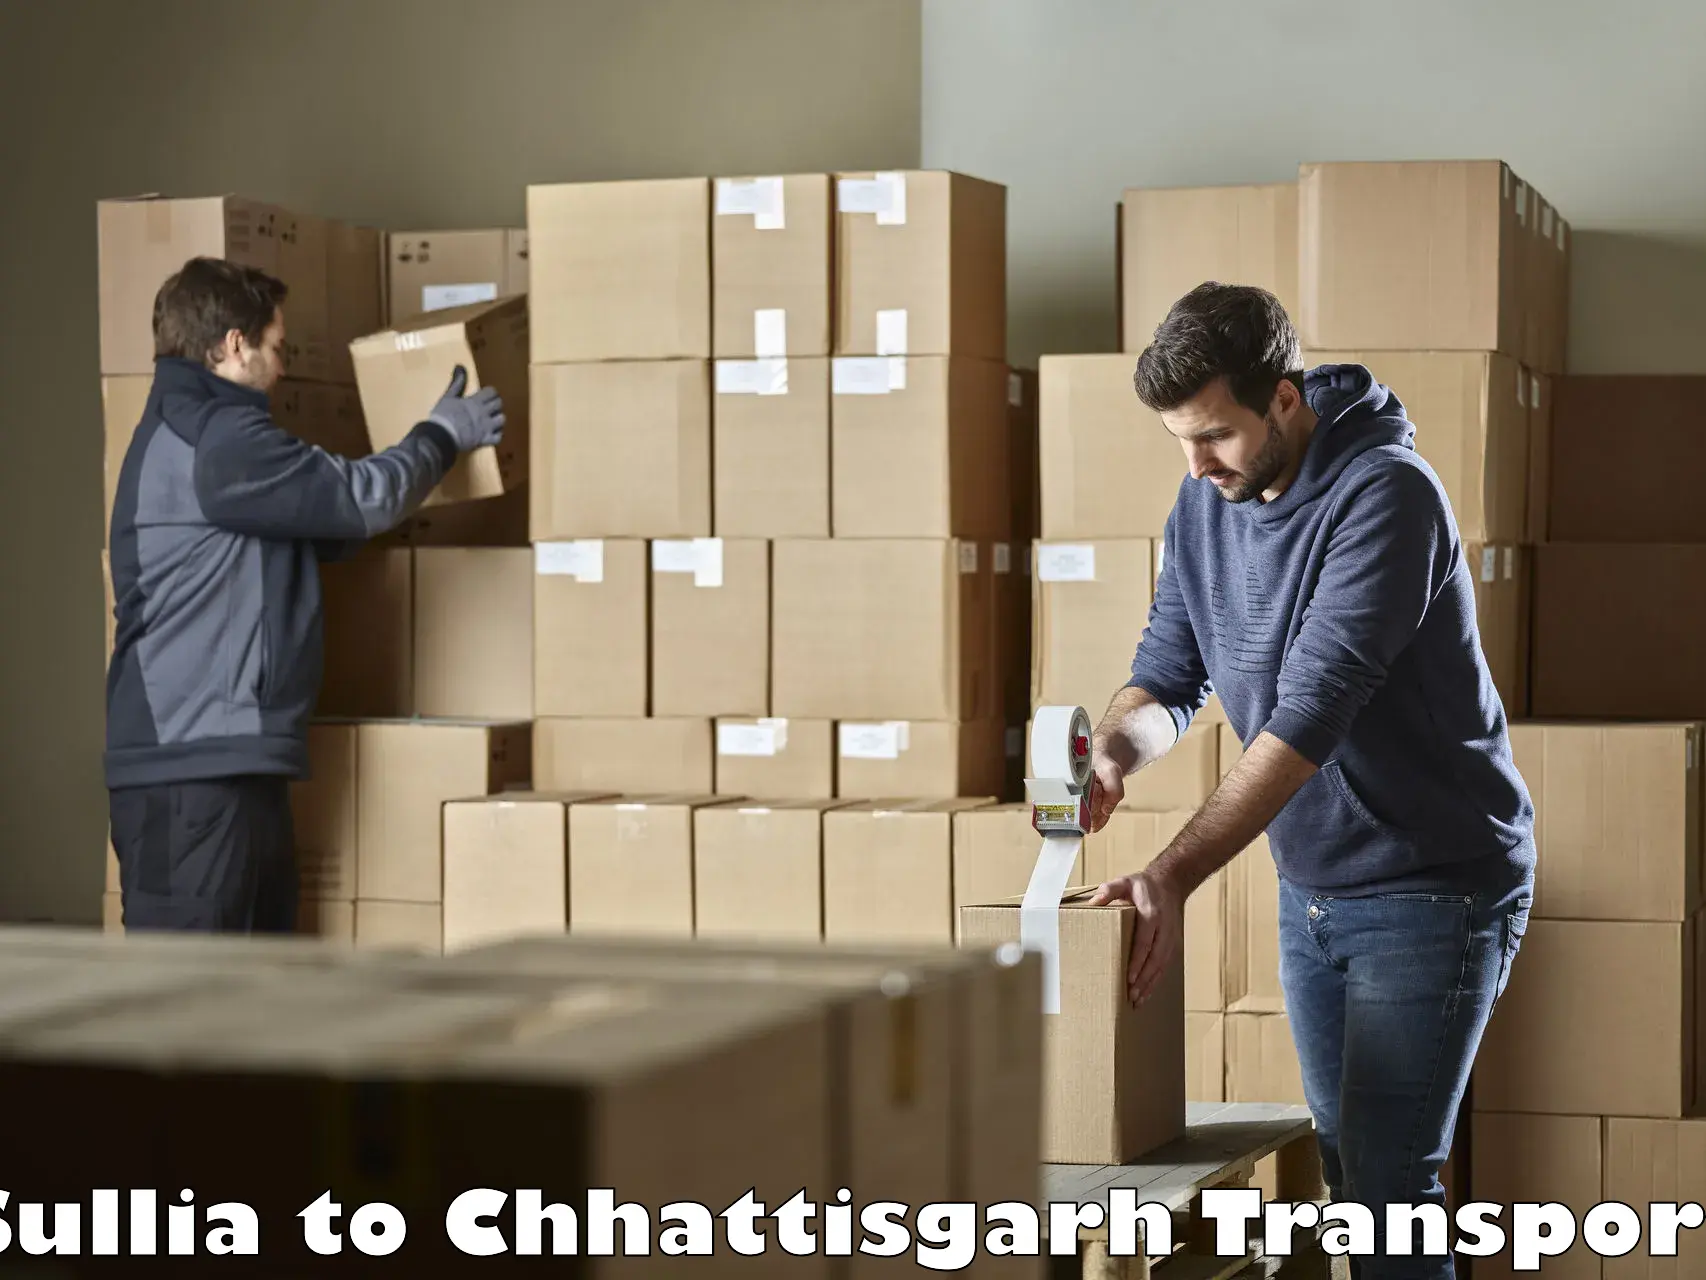 Cargo transport services Sullia to Korea Chhattisgarh